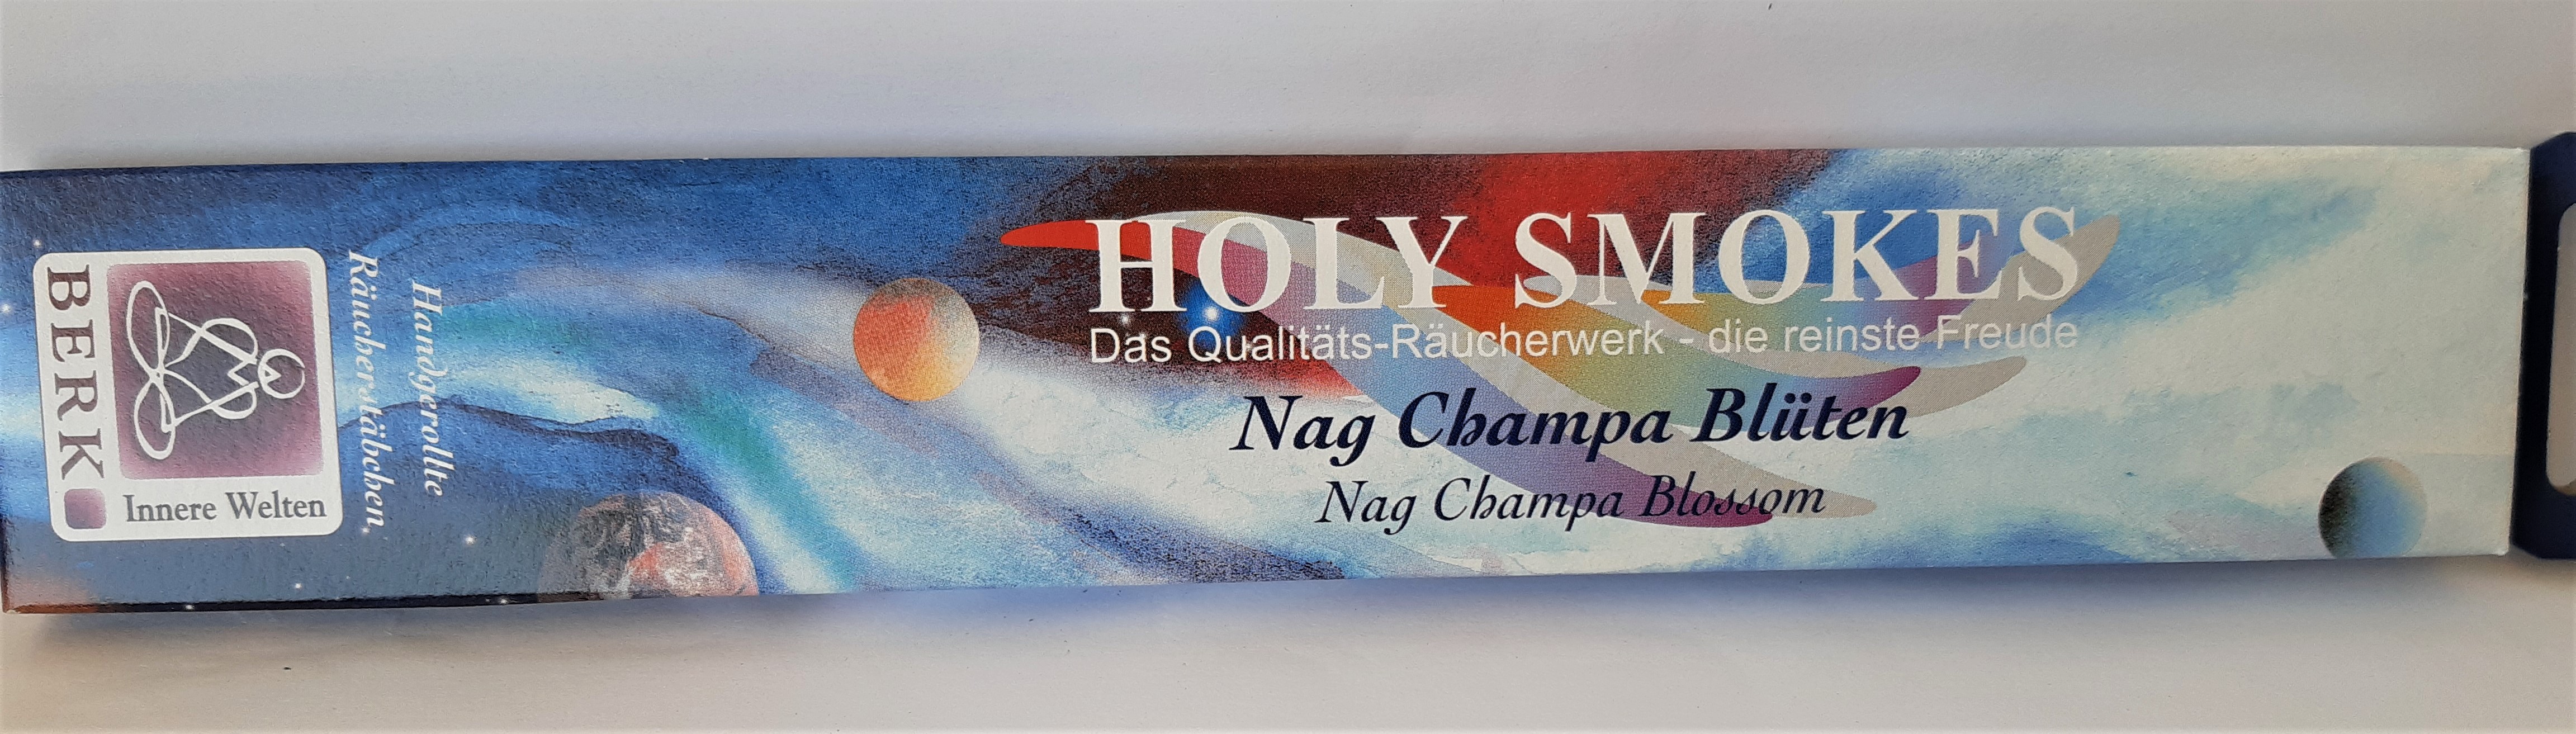 Nag Champa Blüten Holy Smokes Blue Line von Berk Esoterik Räucherstäbchen 